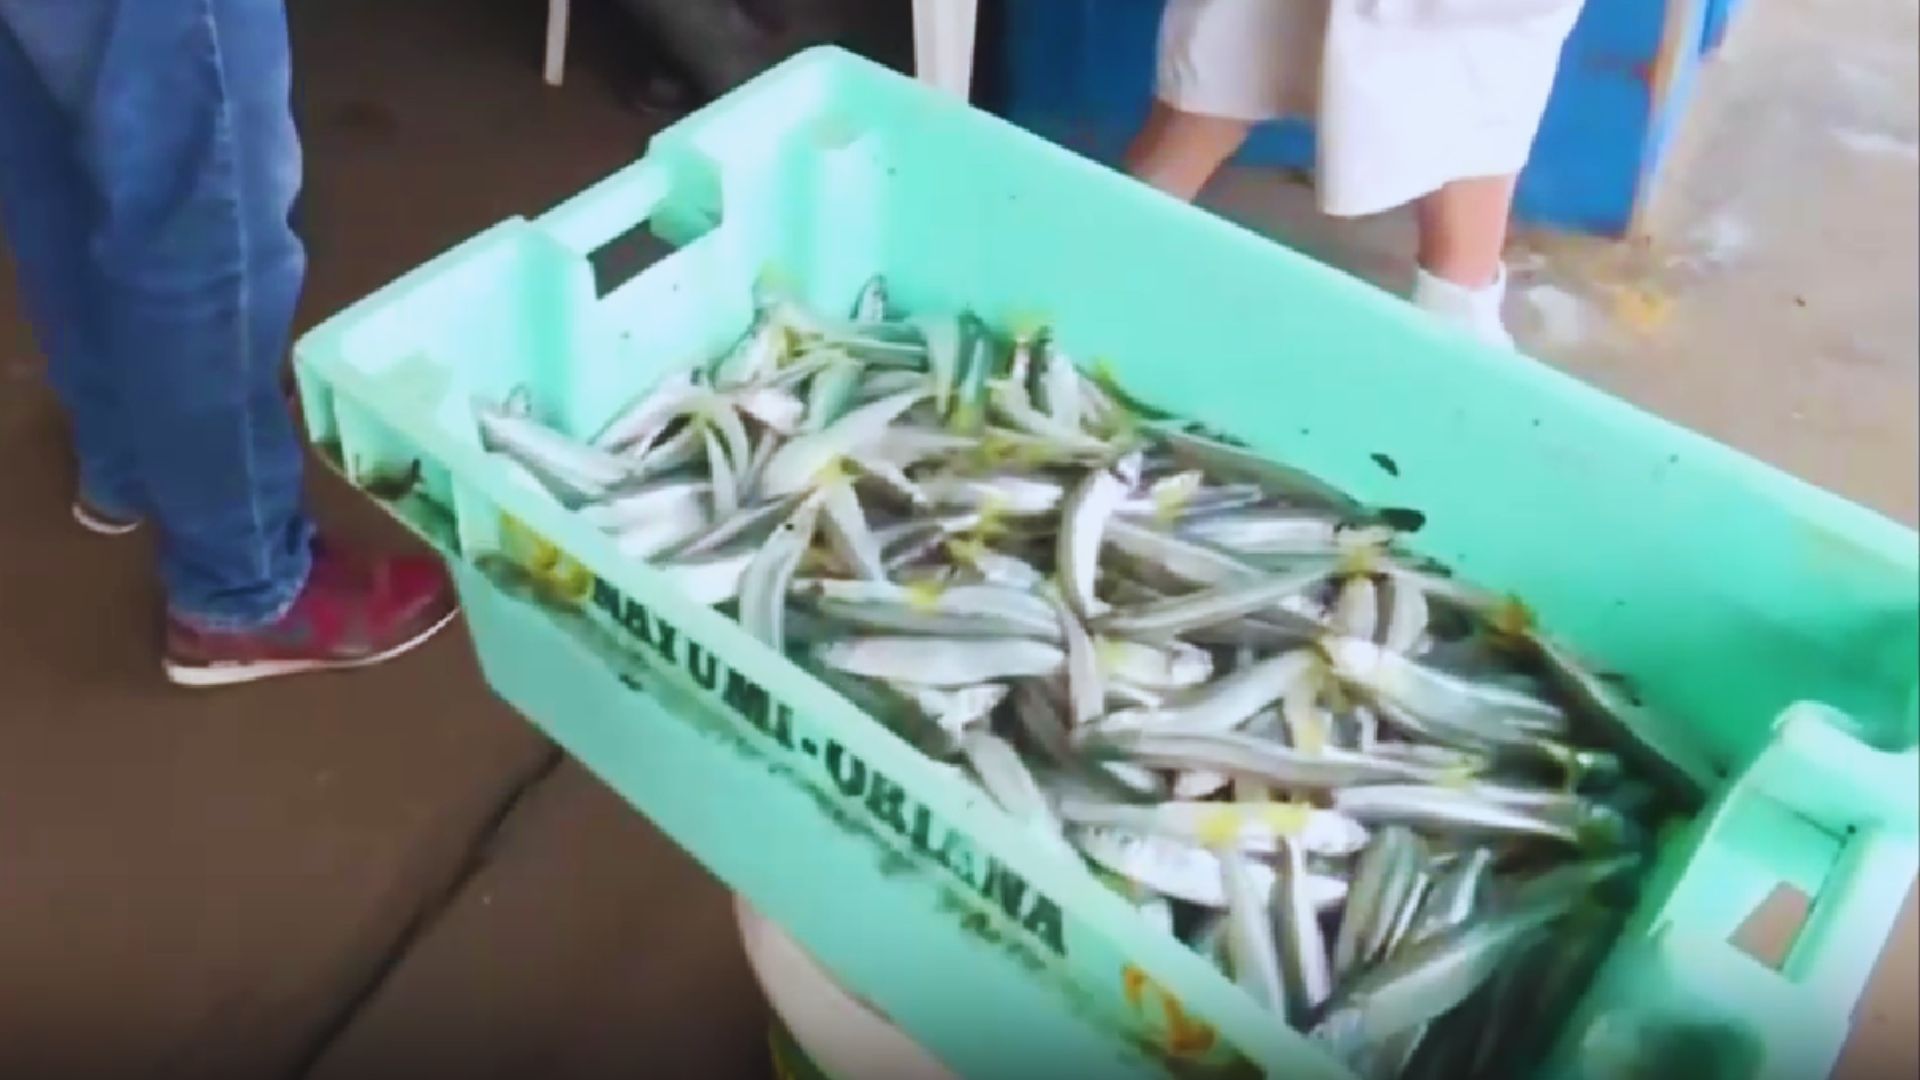 Pescadores perjudicados por oleajes anómalos: hace varias semanas no pueden ingresar al mar y precio del pescado se incrementa